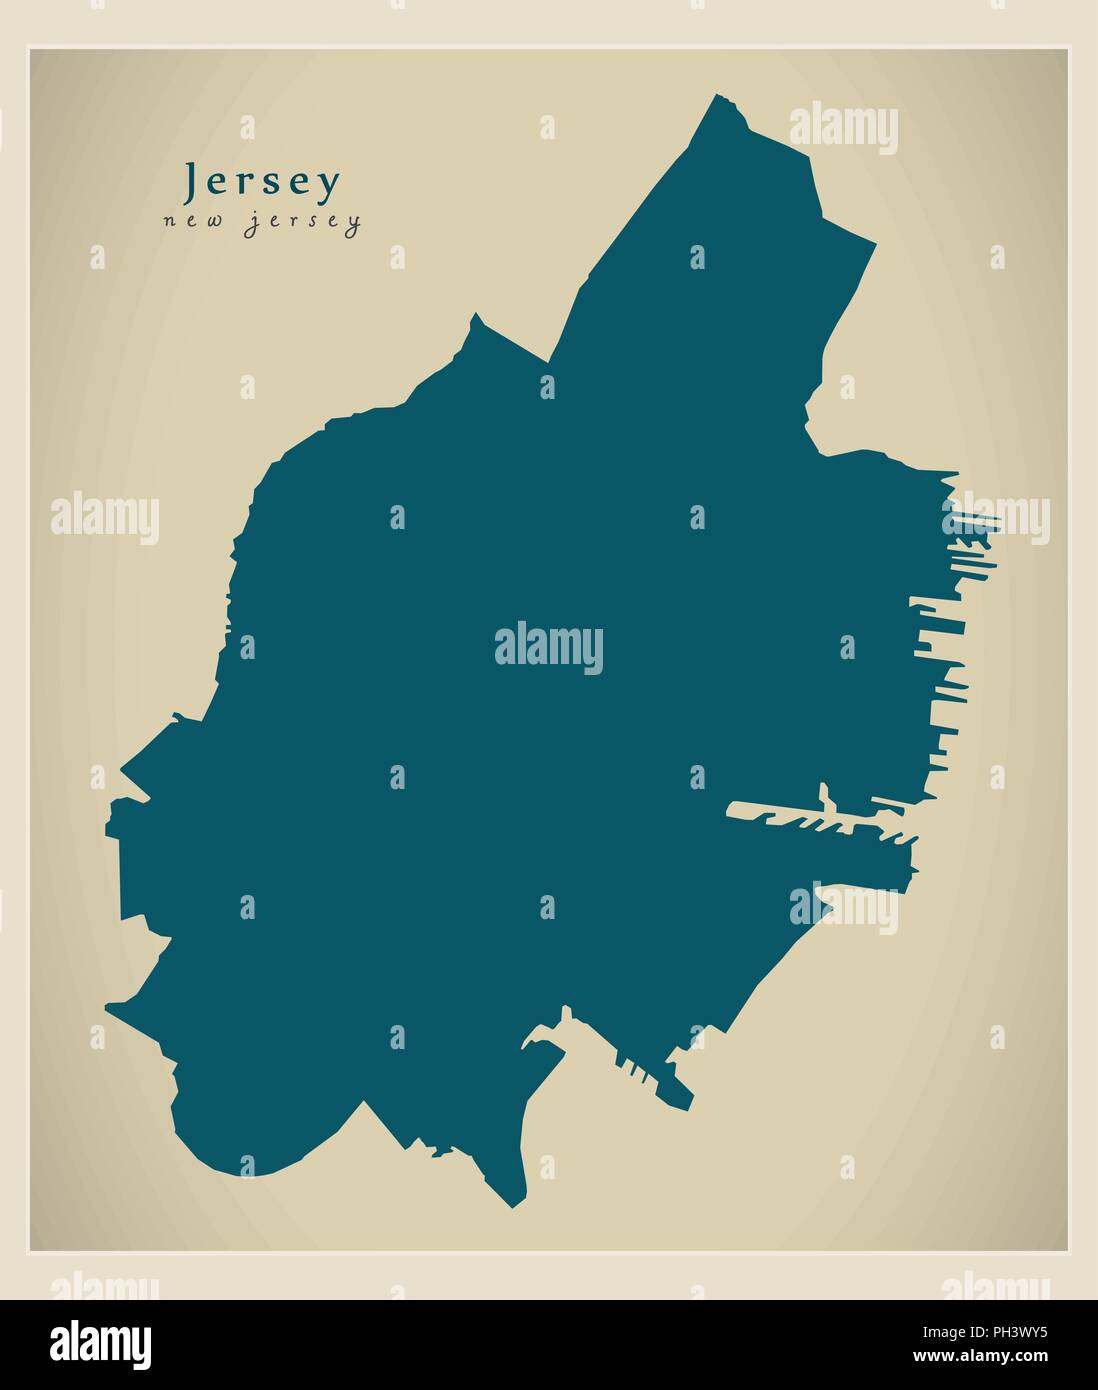 Città moderna mappa - Jersey New Jersey città degli STATI UNITI D'AMERICA Illustrazione Vettoriale